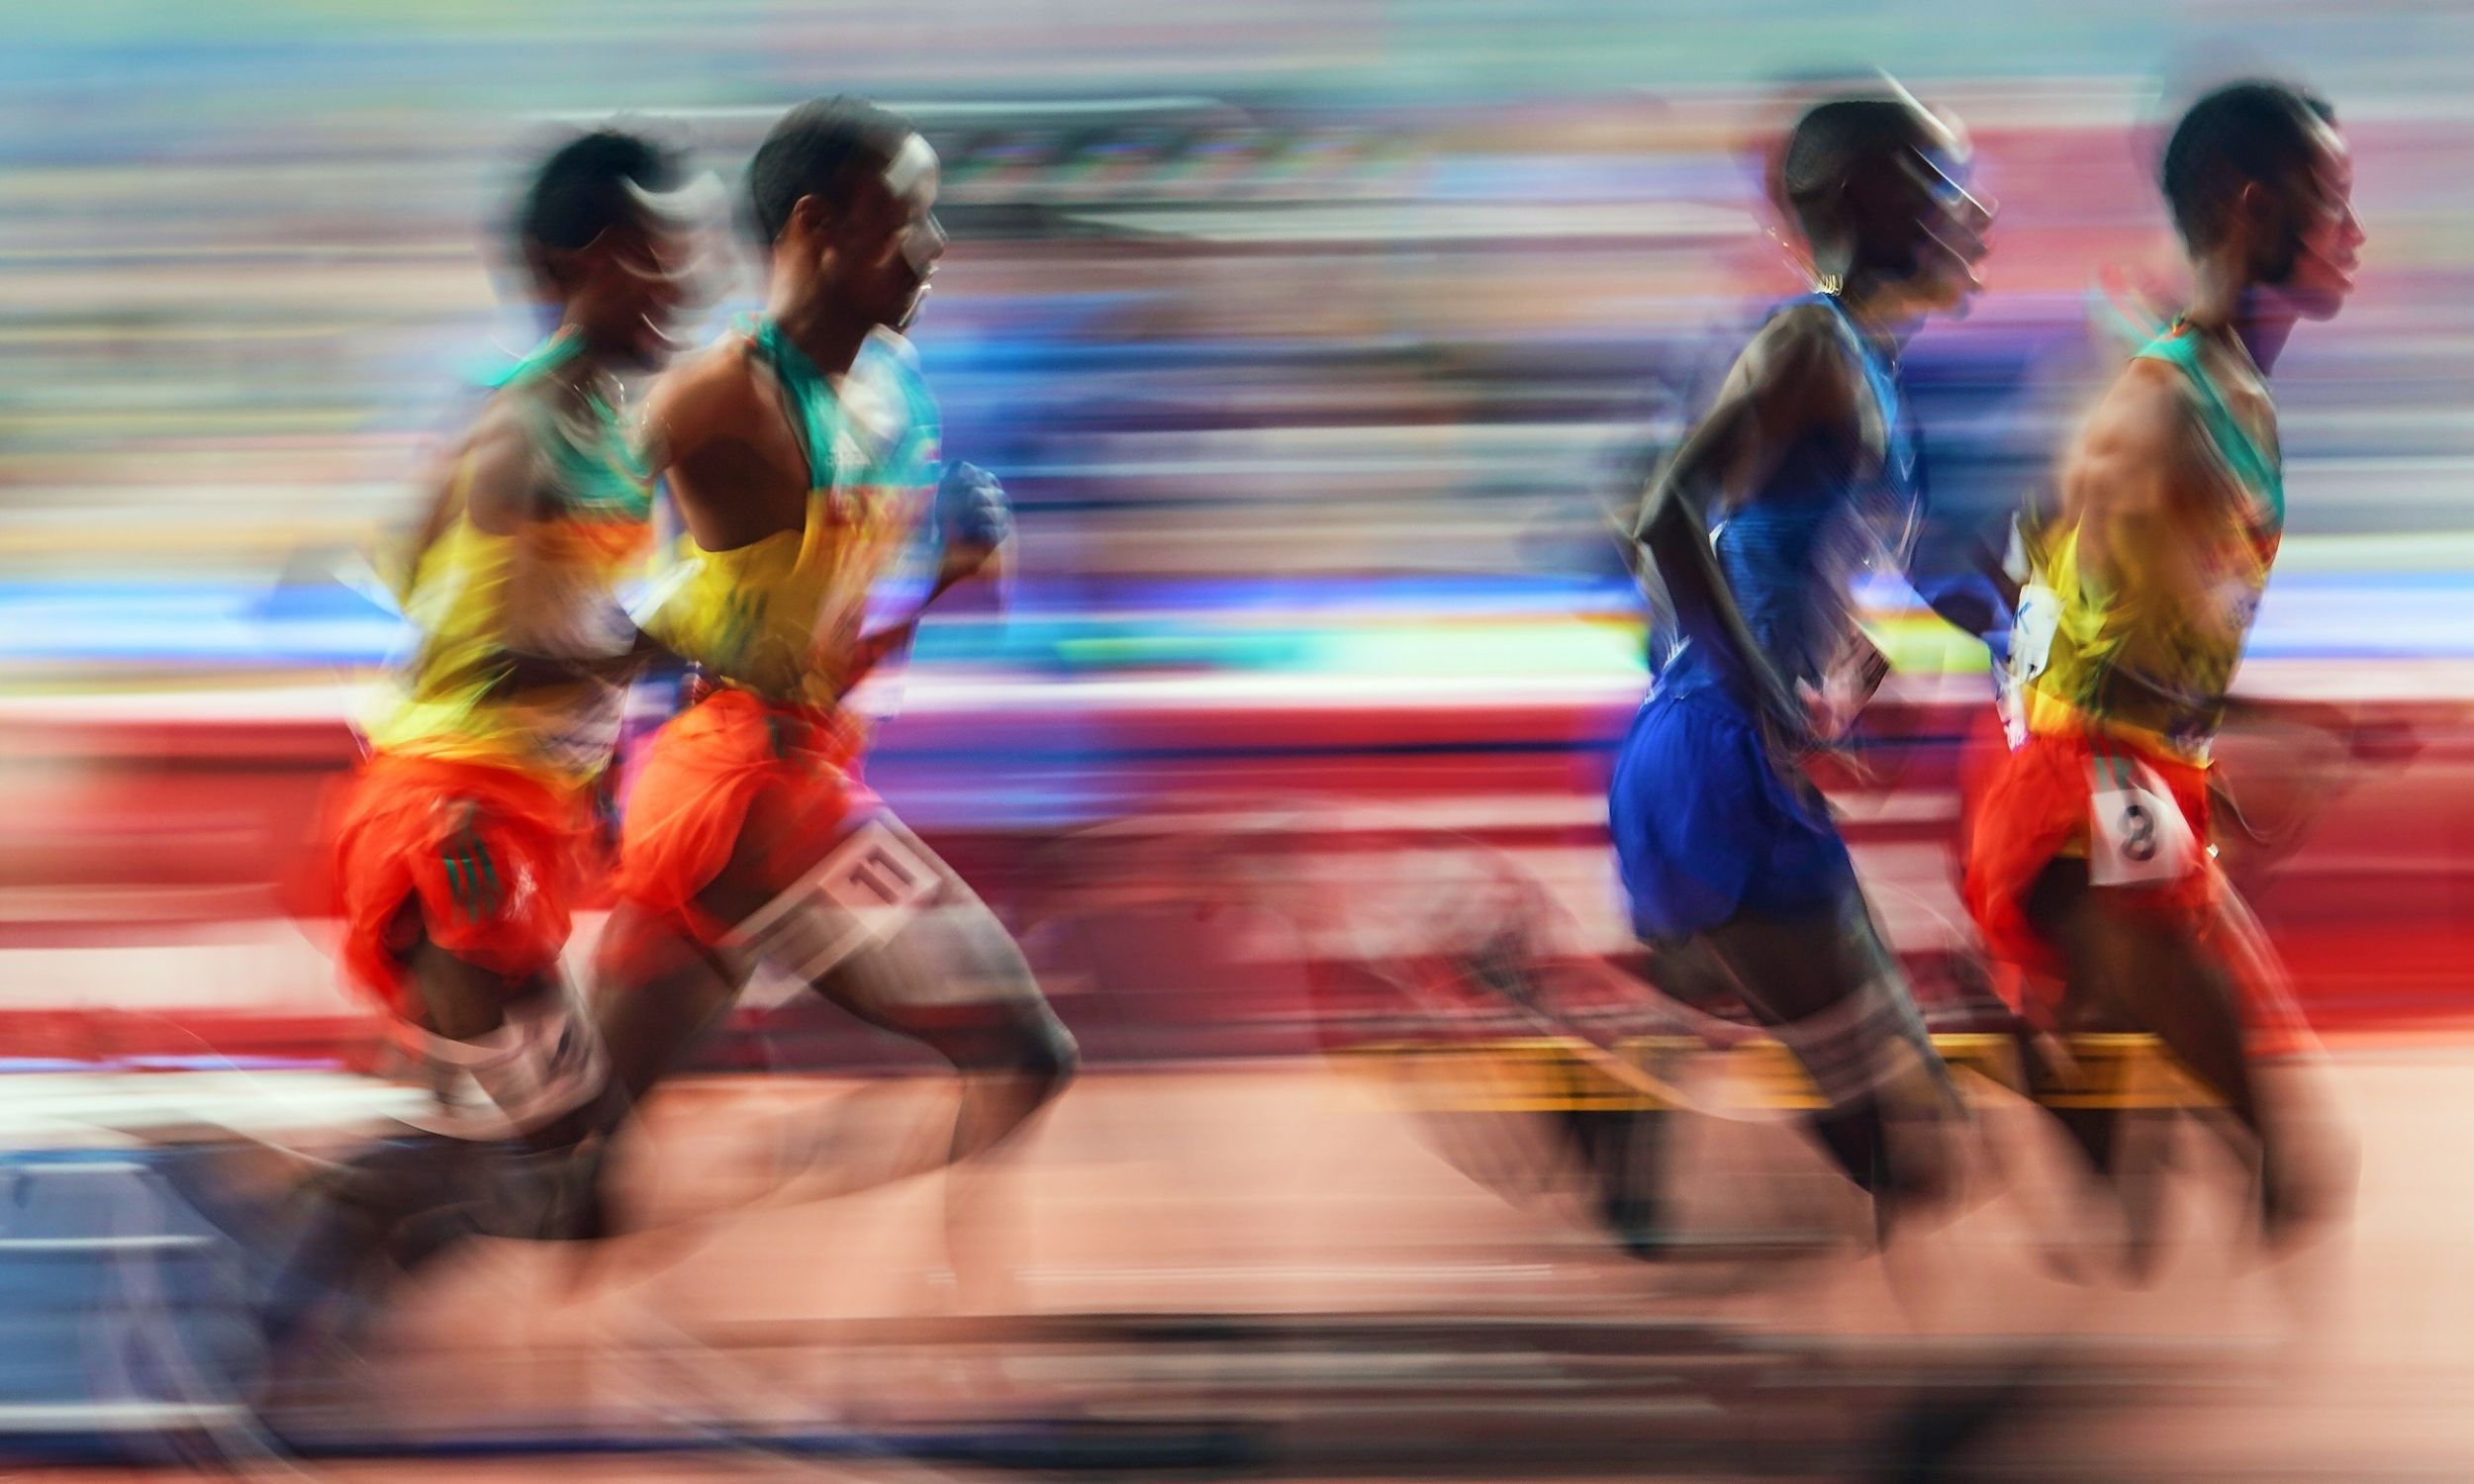 Muktar Edris i Telahun Haile Bekele – obaj z Etiopii – rywalizują w biegu na 5000 metrów dla mężczyzn podczas 17. Mistrzostw Świata w Lekkoatletyce IAAF na stadionie Khalifa w Doha w Katarze, 30 września 2019 r. Fot. Ulrik Pedersen / NurPhoto via Getty Images